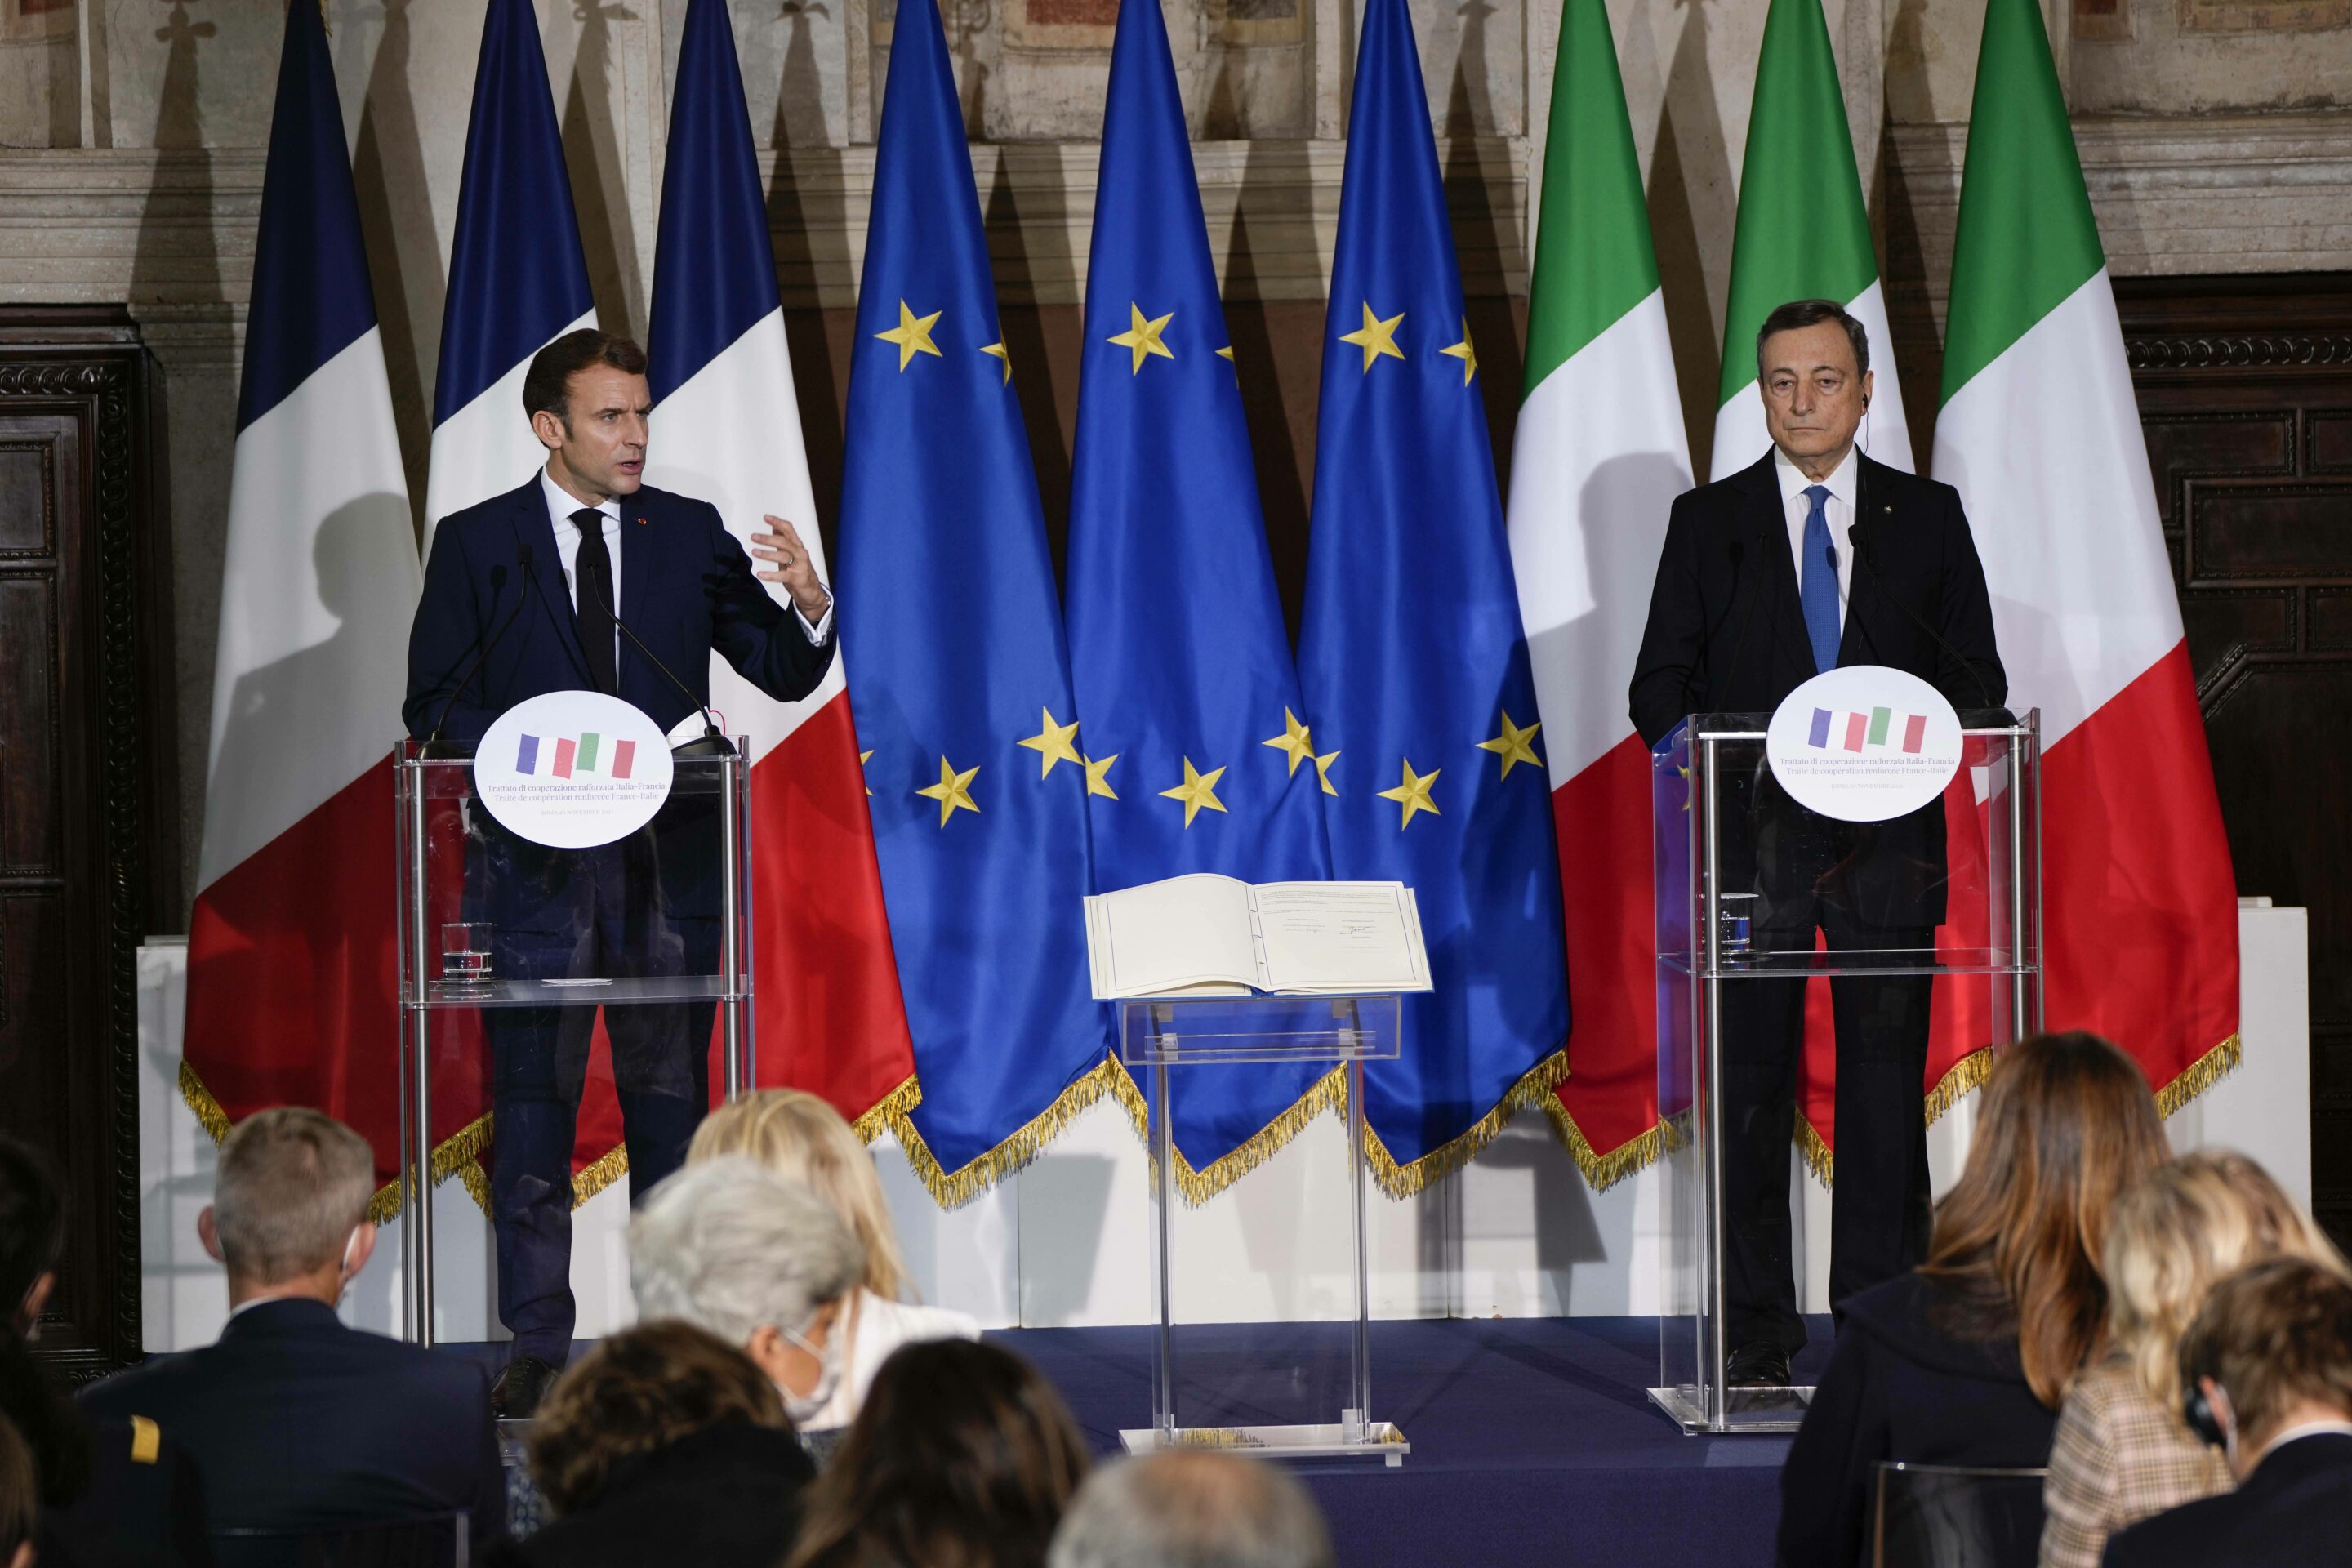 Le président français Emmanuel Macron et le premier ministre italien Mario Draghi à la Villa Madame à Rome, après avoir signé le traité du Quirinal entre l'Italie et la France.
Crédits: AP Photo/Domenico Stinellis